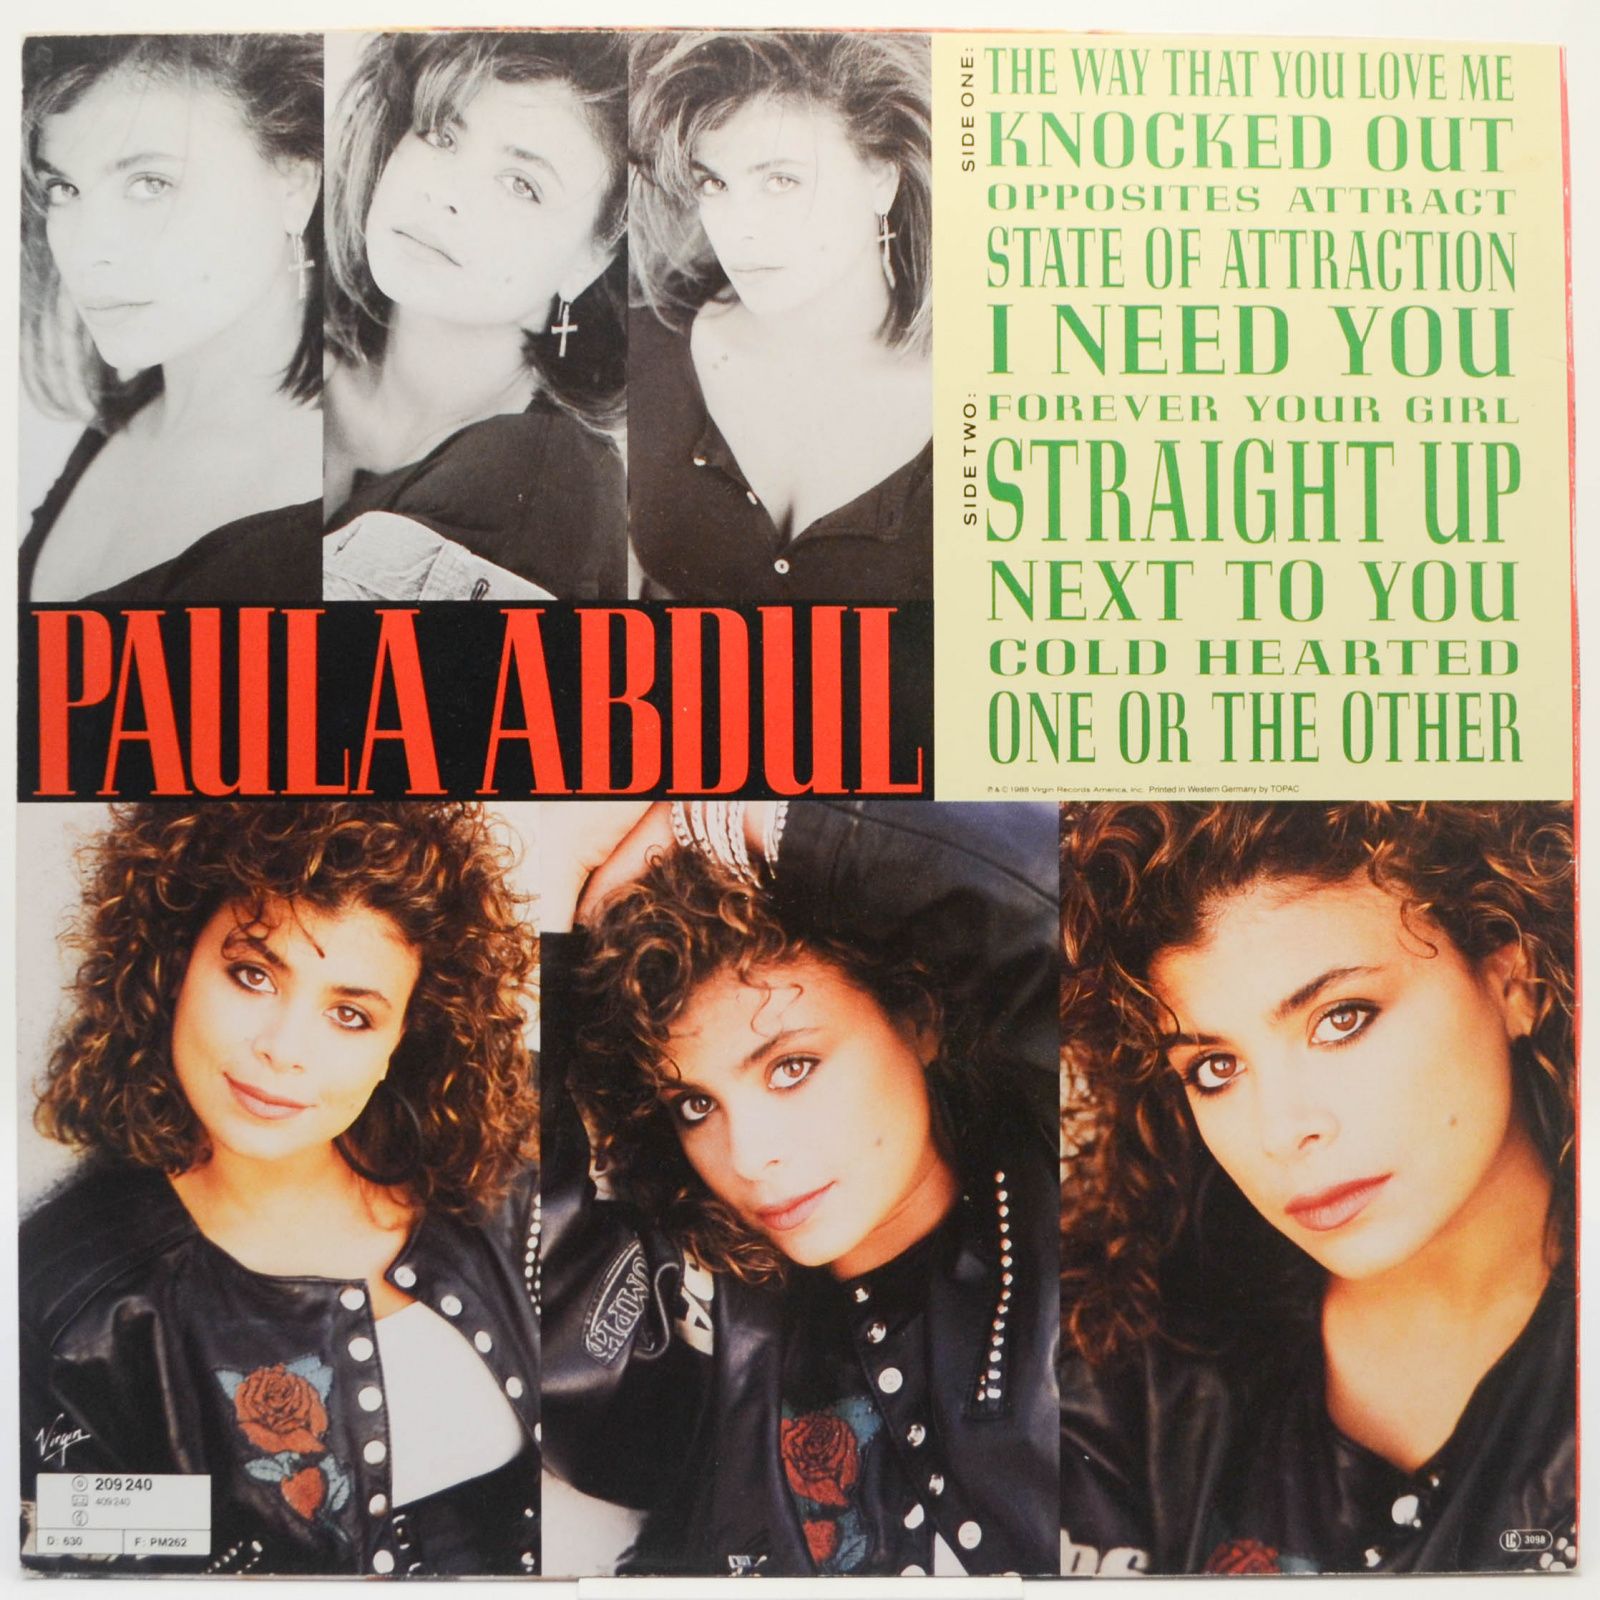 Paula Abdul — Forever Your Girl, 1988